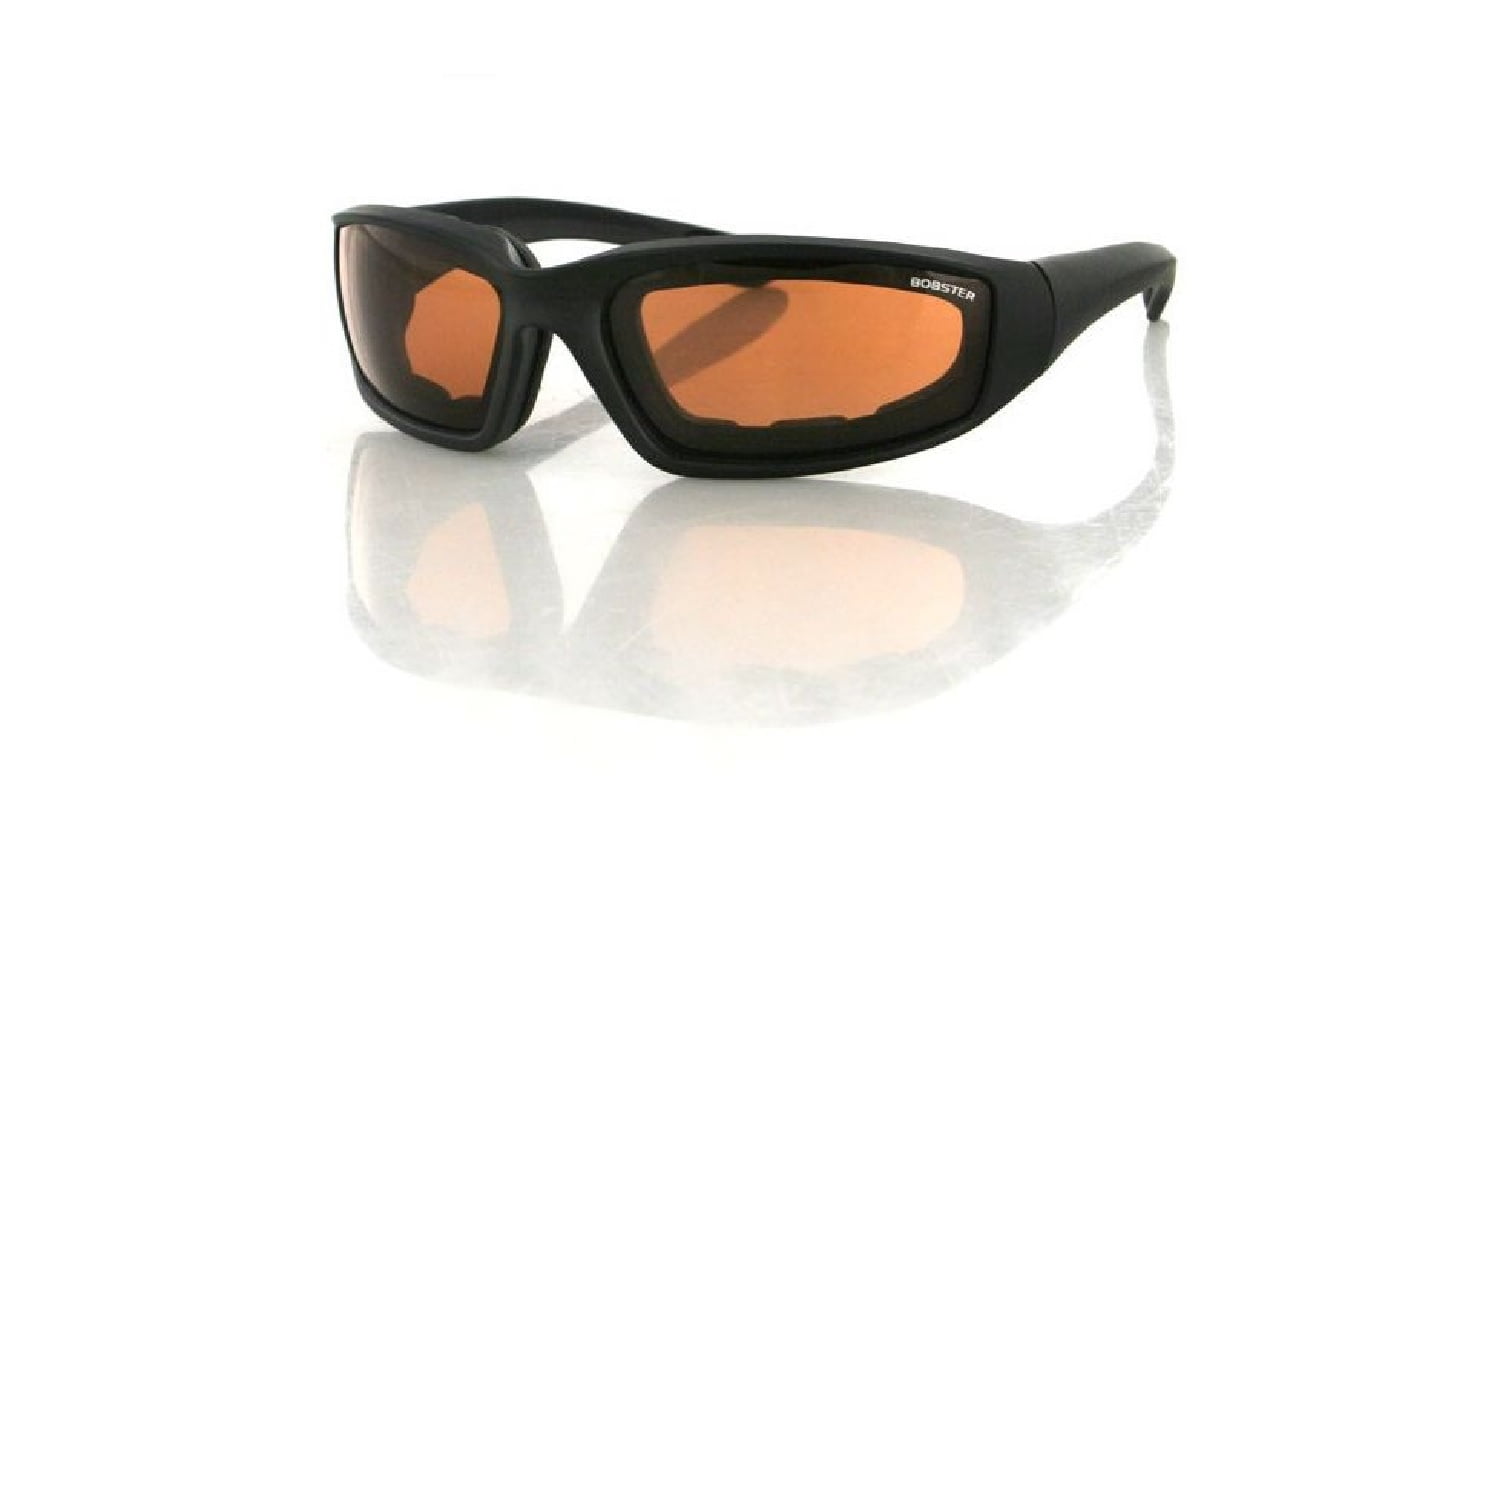 Black Frame, Anti-fog Amber Lens, ANSI Z87 Bobster Foamerz 2 Sunglasses